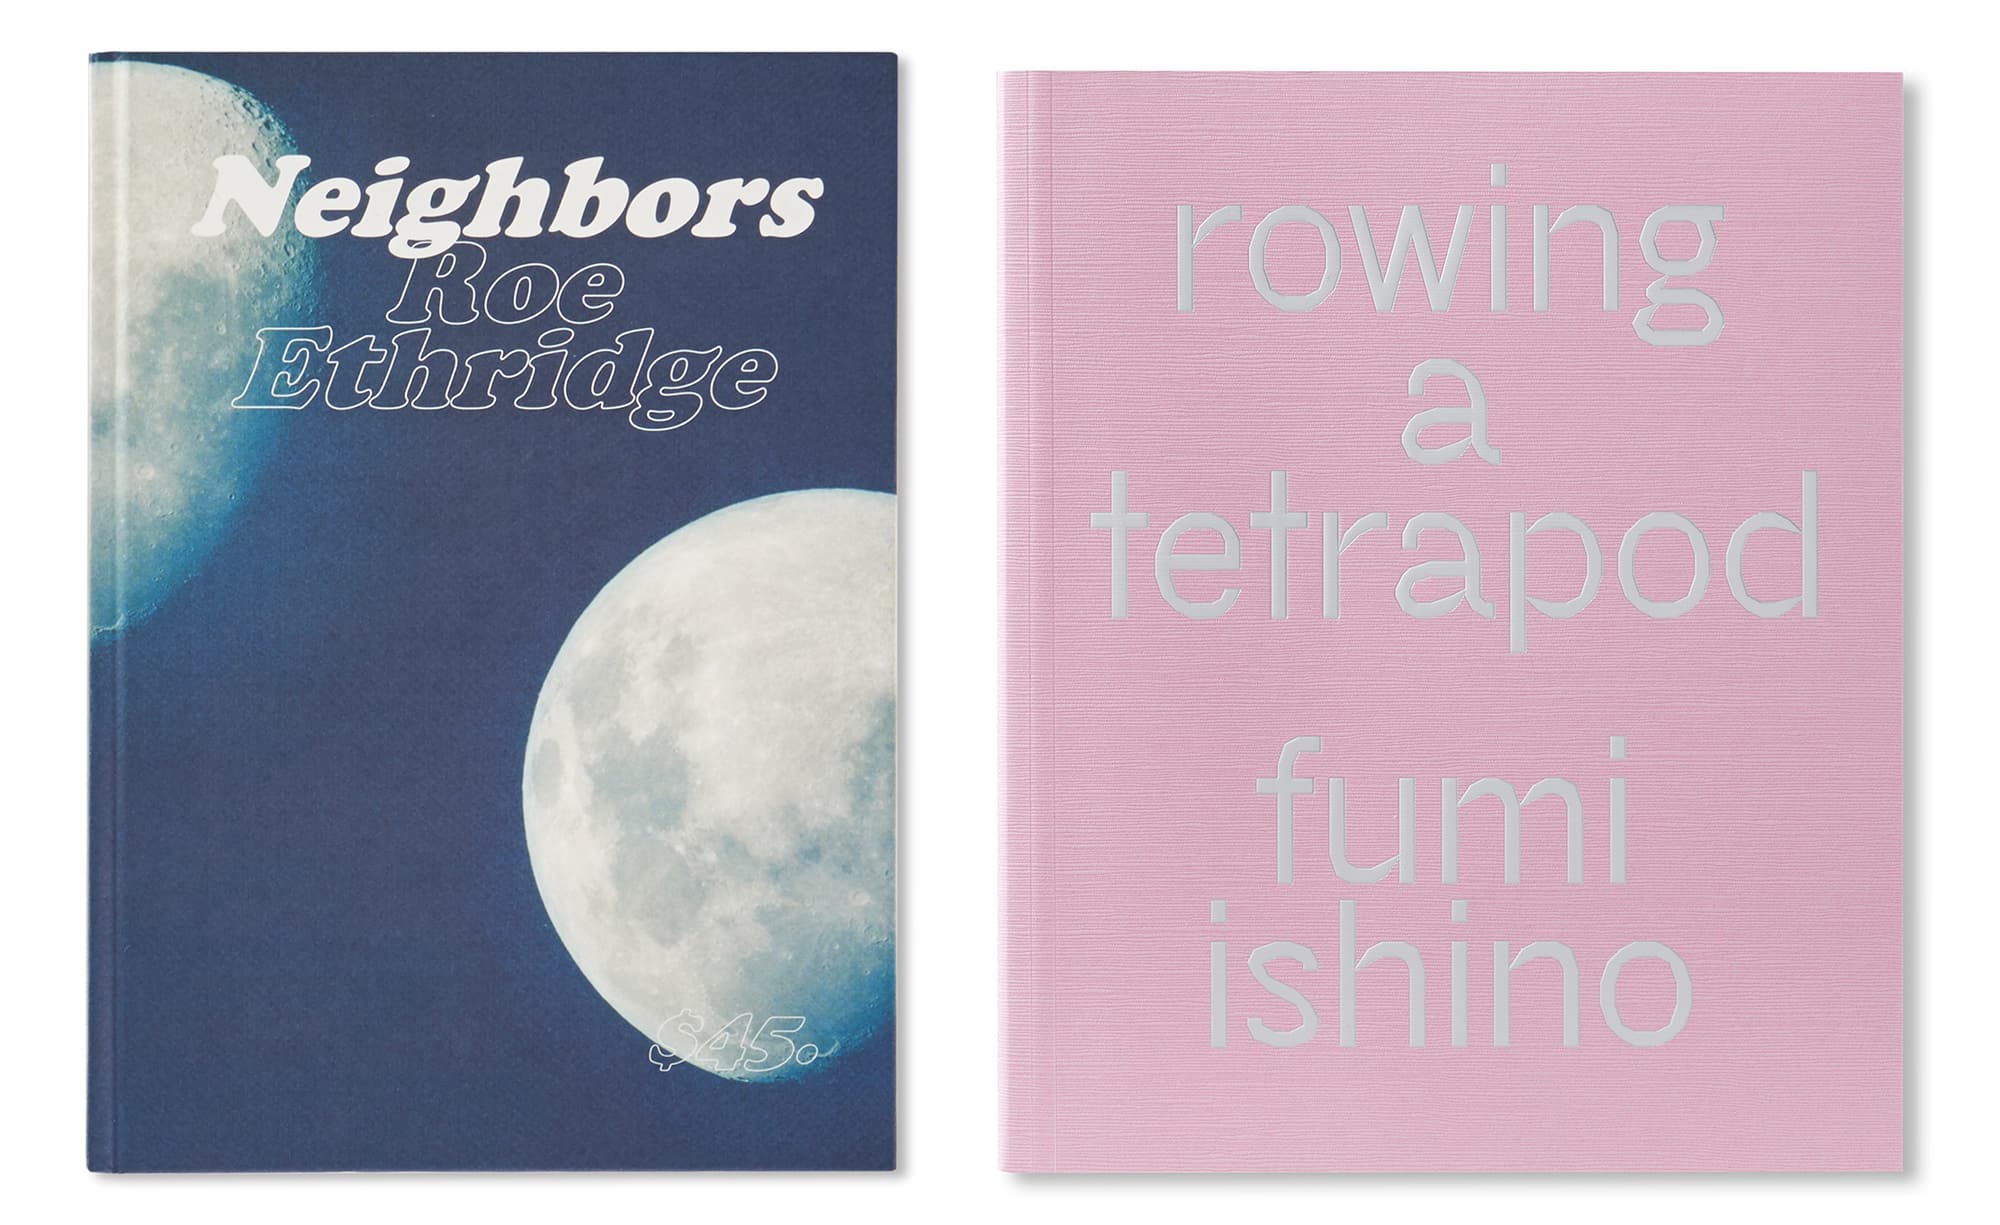 ロー・エスリッジ×⽯野郁和「意図を超えたときに写るもの」 | イギリスの出版社MACKより昨年刊行されたRoe Ethridge『Neighbors』と、今年9月に刊行された石野郁和『Rowing a Tetrapod』